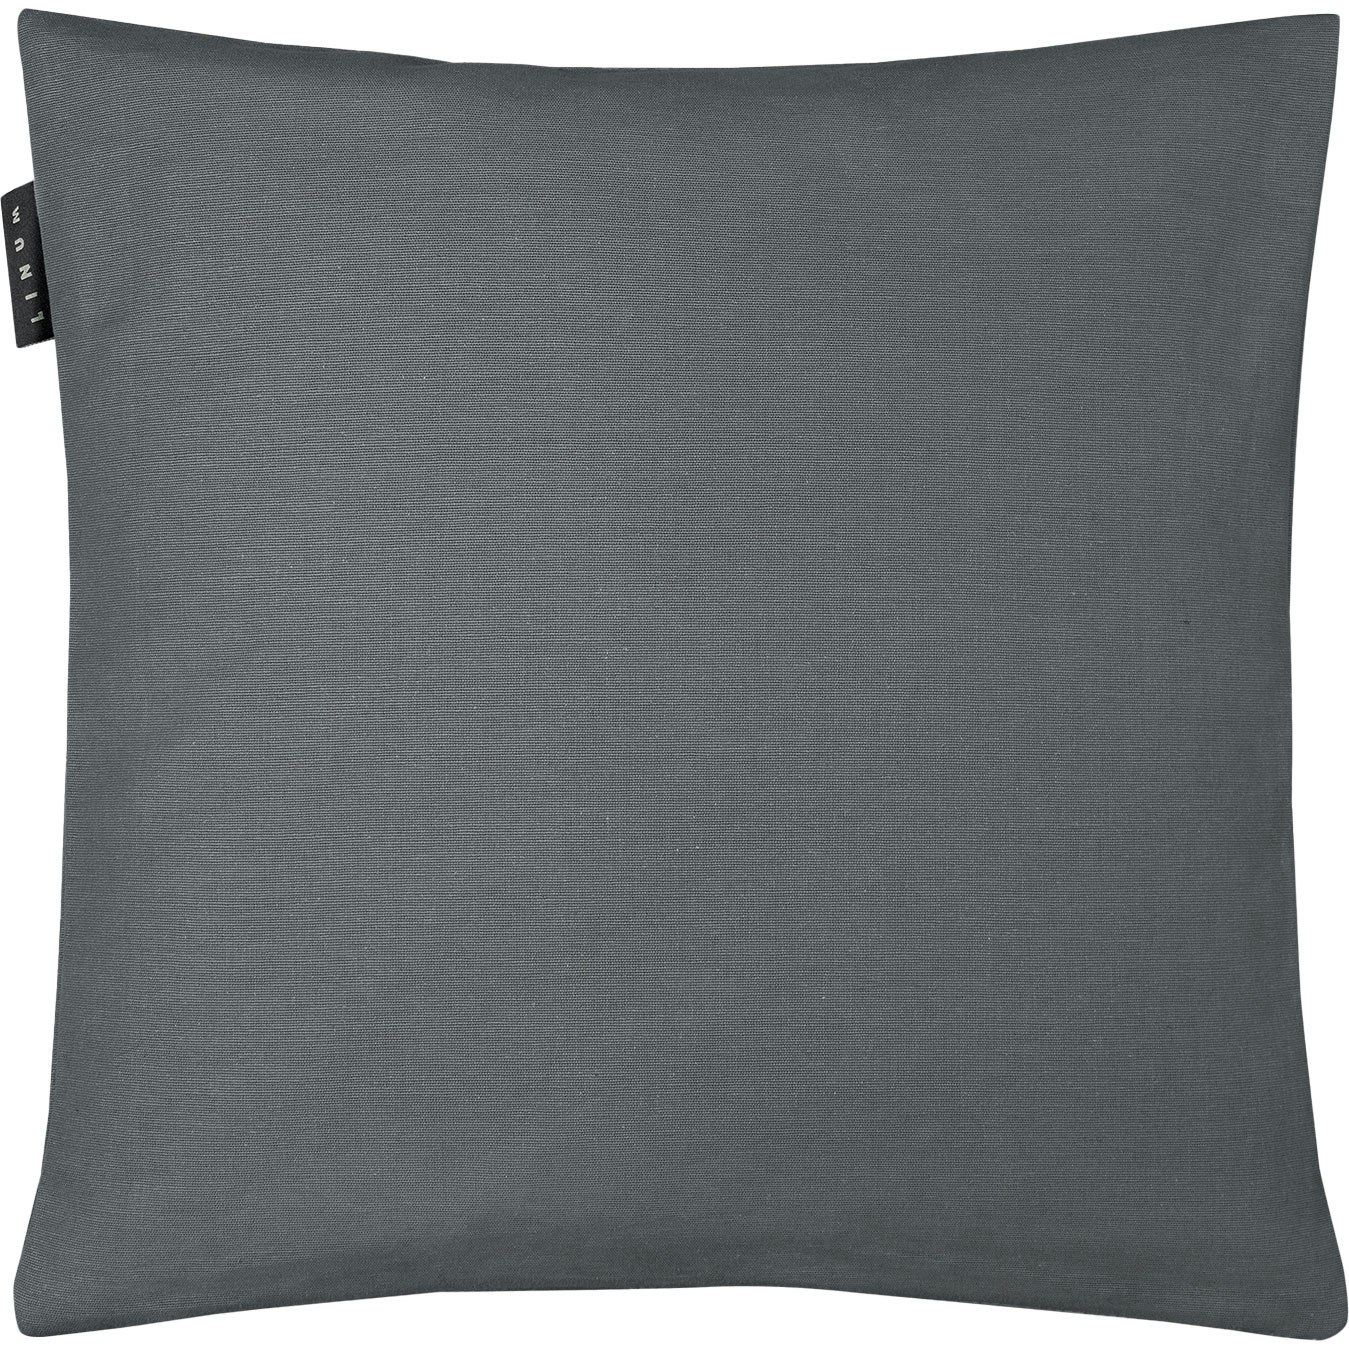 Annabelle Cushion Cover 40x40 cm, Granite Grey